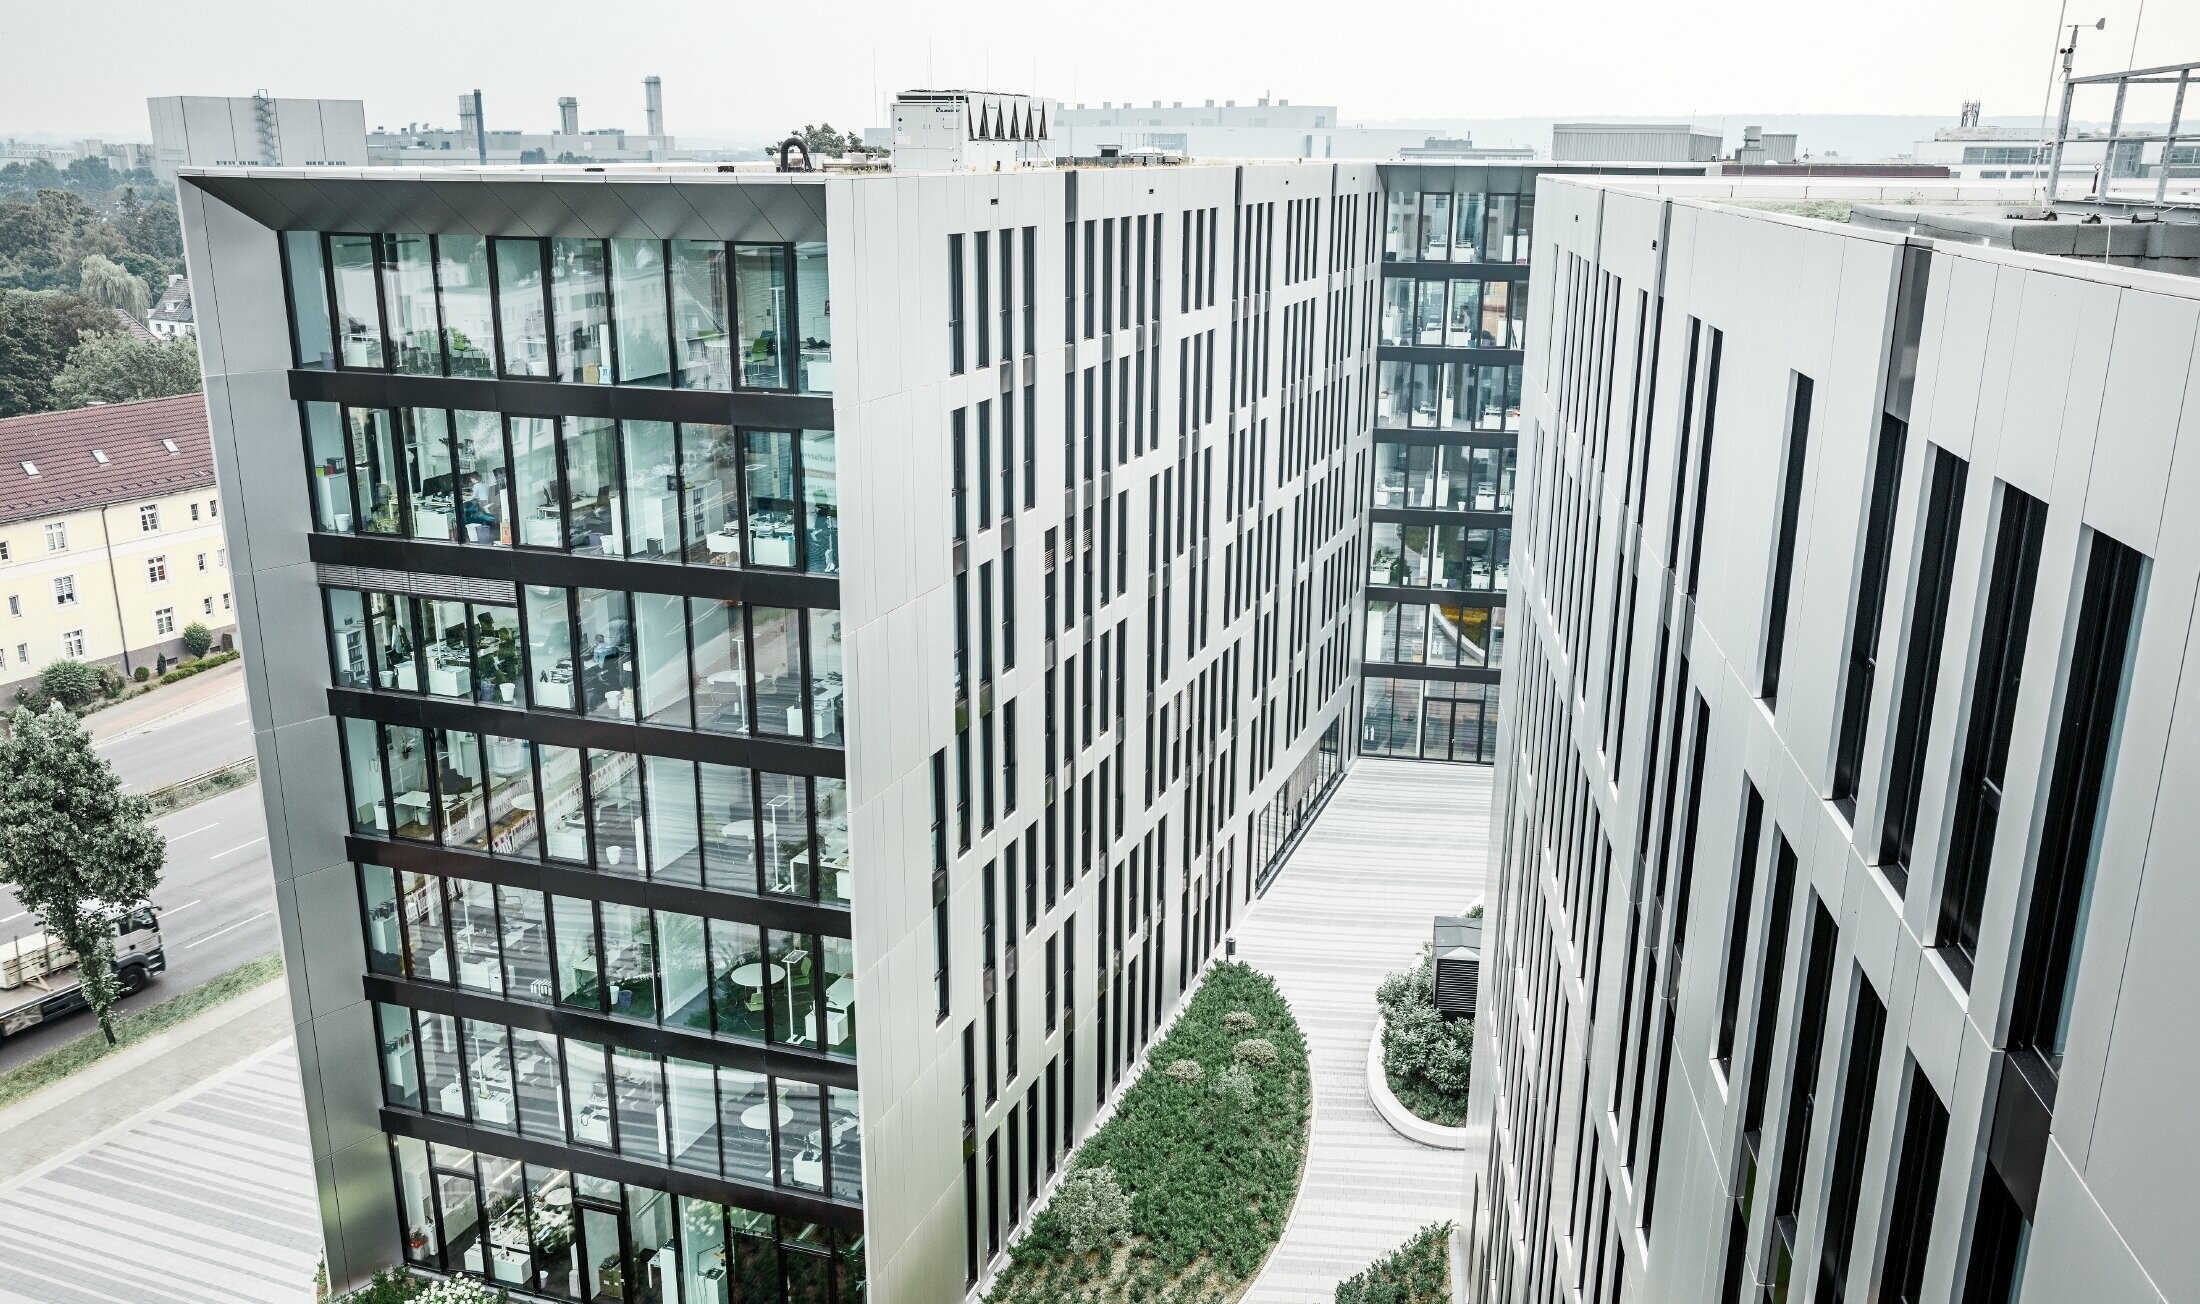 Complexe architectural Clara et Robert au centre de Düsseldorf — Façades en aluminium futuristes réalisées avec des panneaux composites PREFA en aluminium brossé.